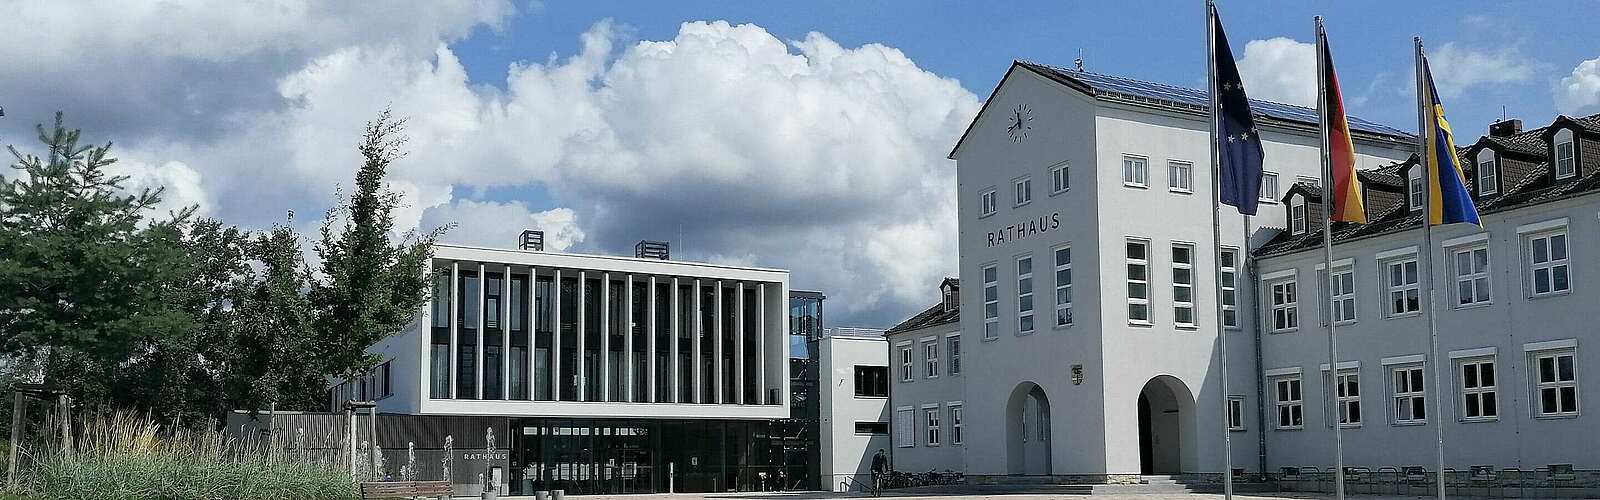 Das Rathaus in Hohen Neuendorf,
        
    

        Foto: Tourismusverband Ruppiner Seenland e.V./Kein Urheber bekannt